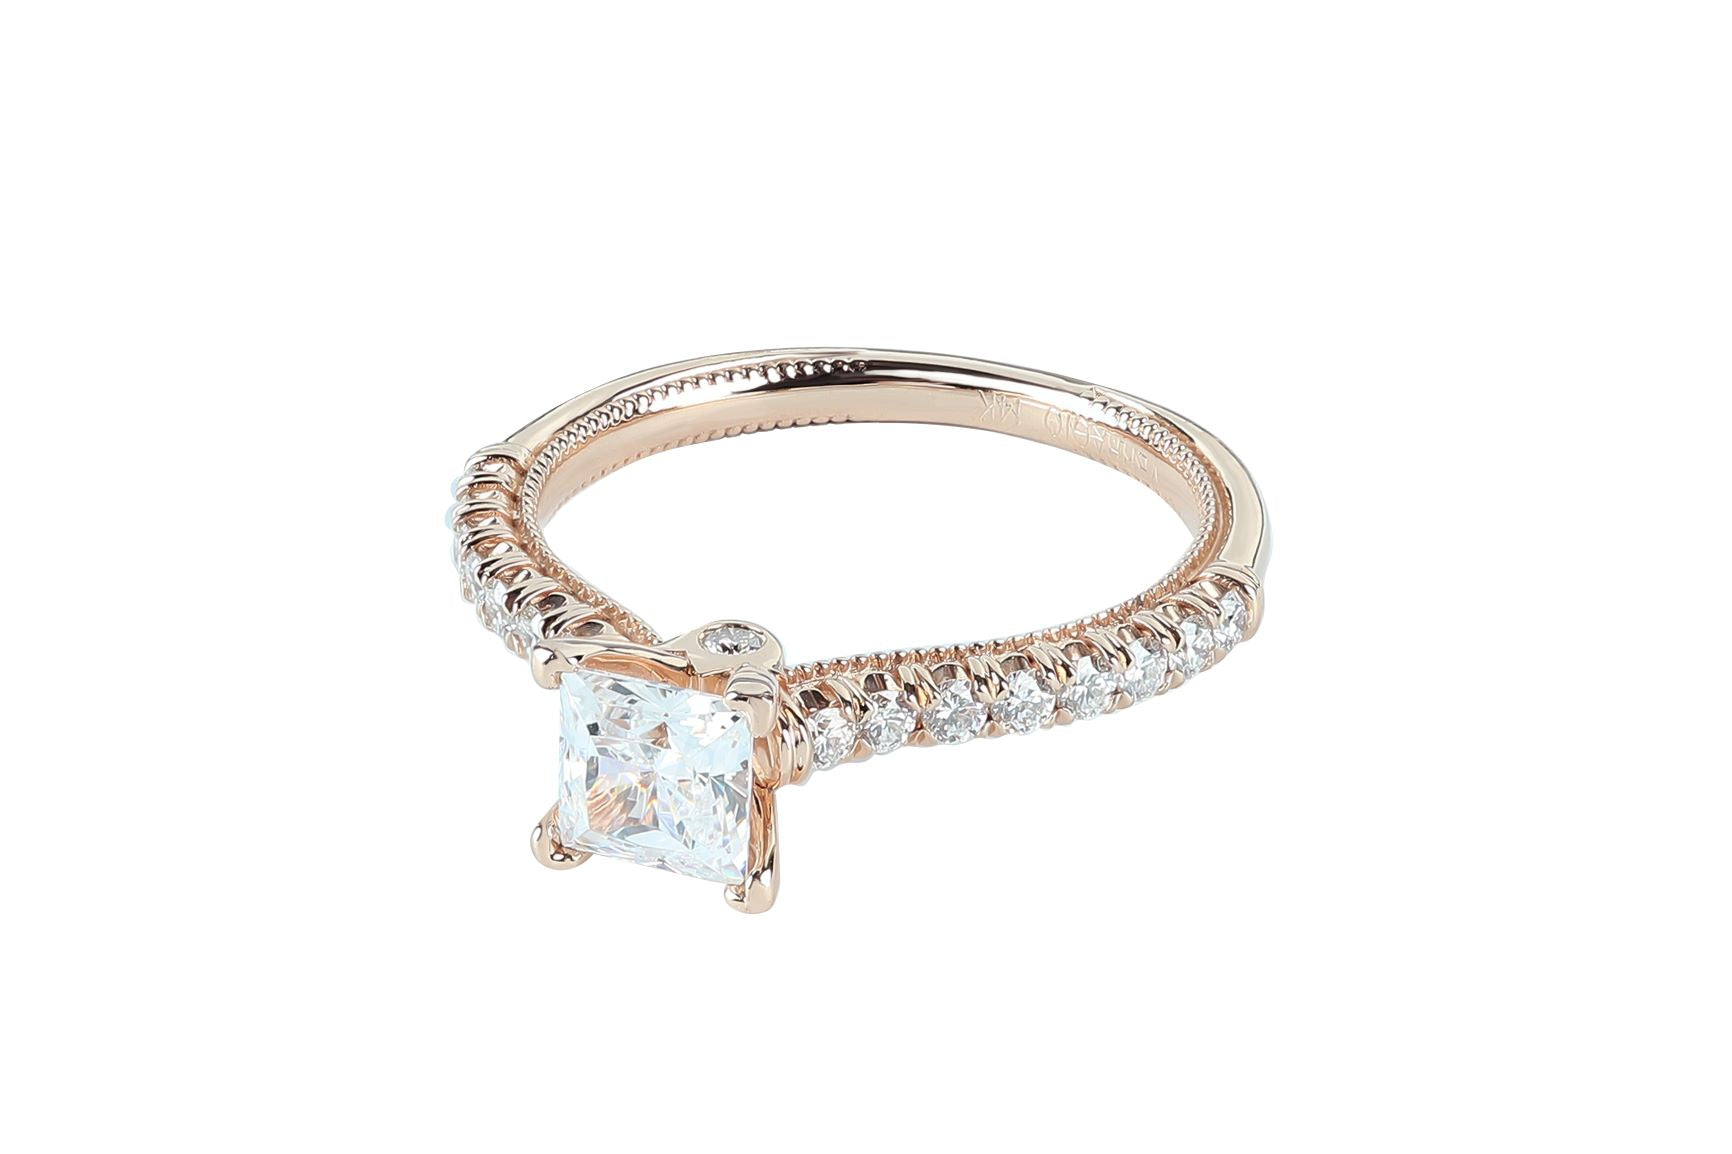 Verragio 5/6 ctw Diamond Engagement Ring